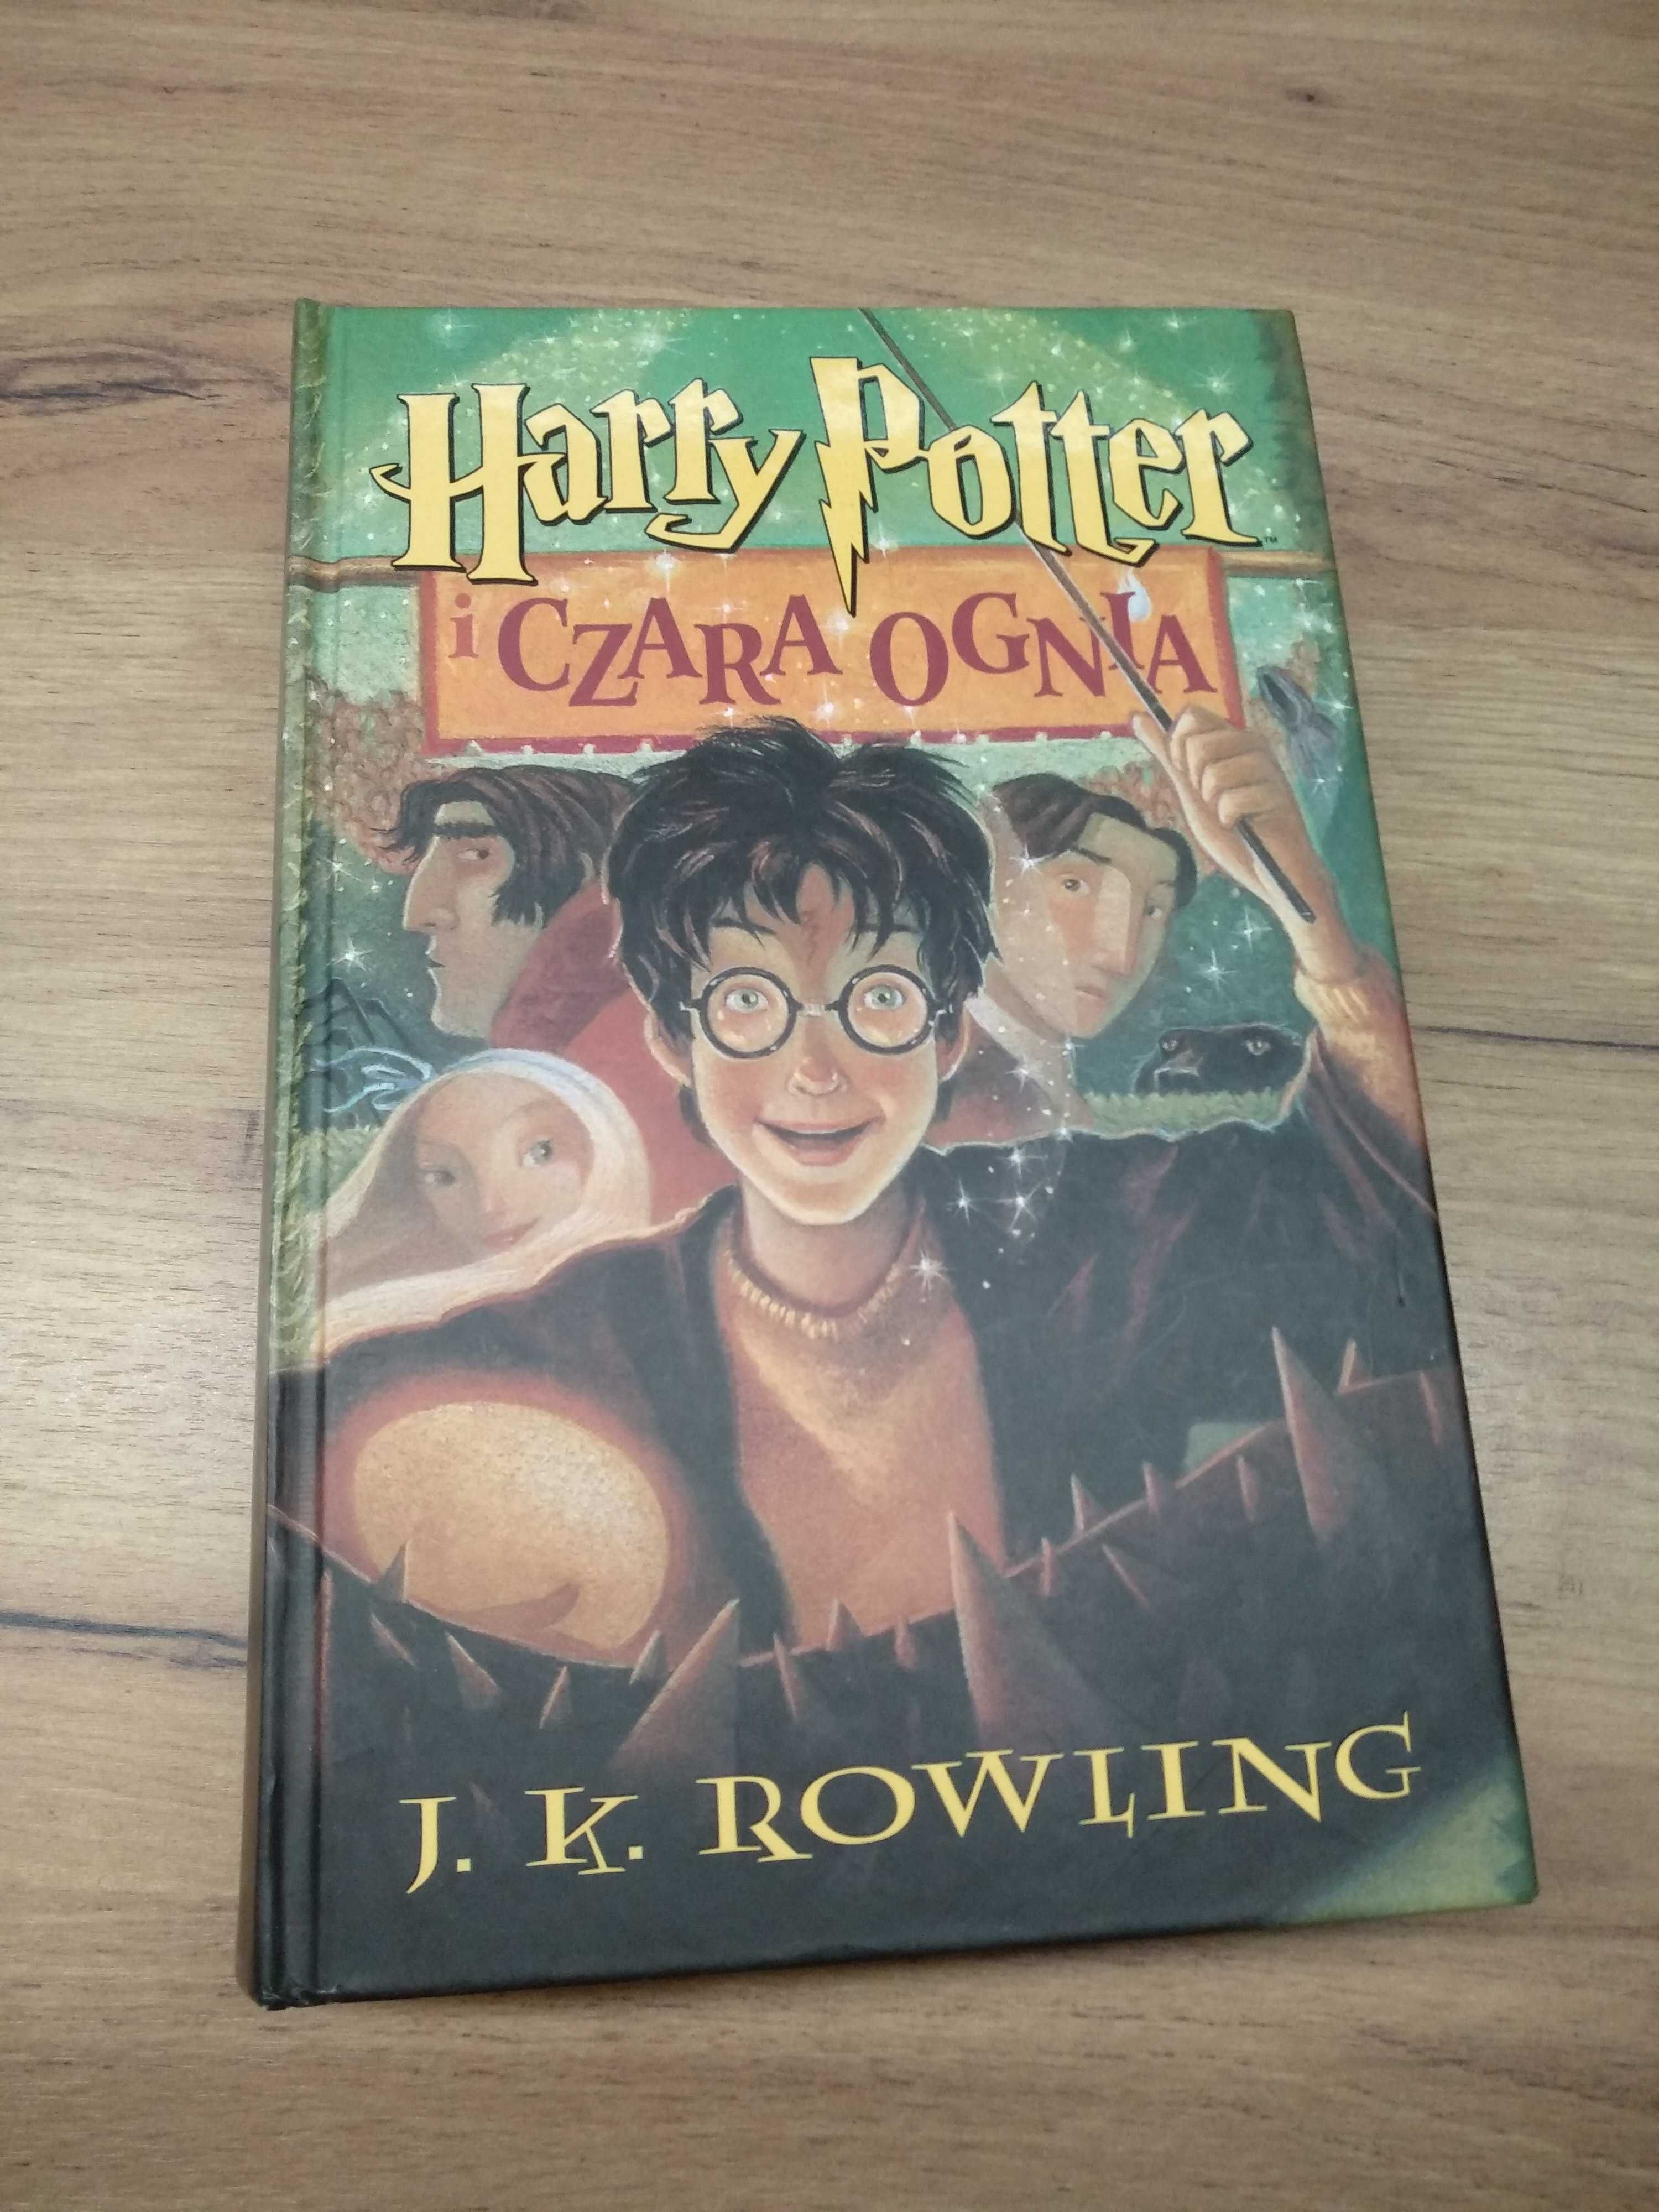 Harry Potter i Czara ognia stare wydanie pierwsza oprawa twarda